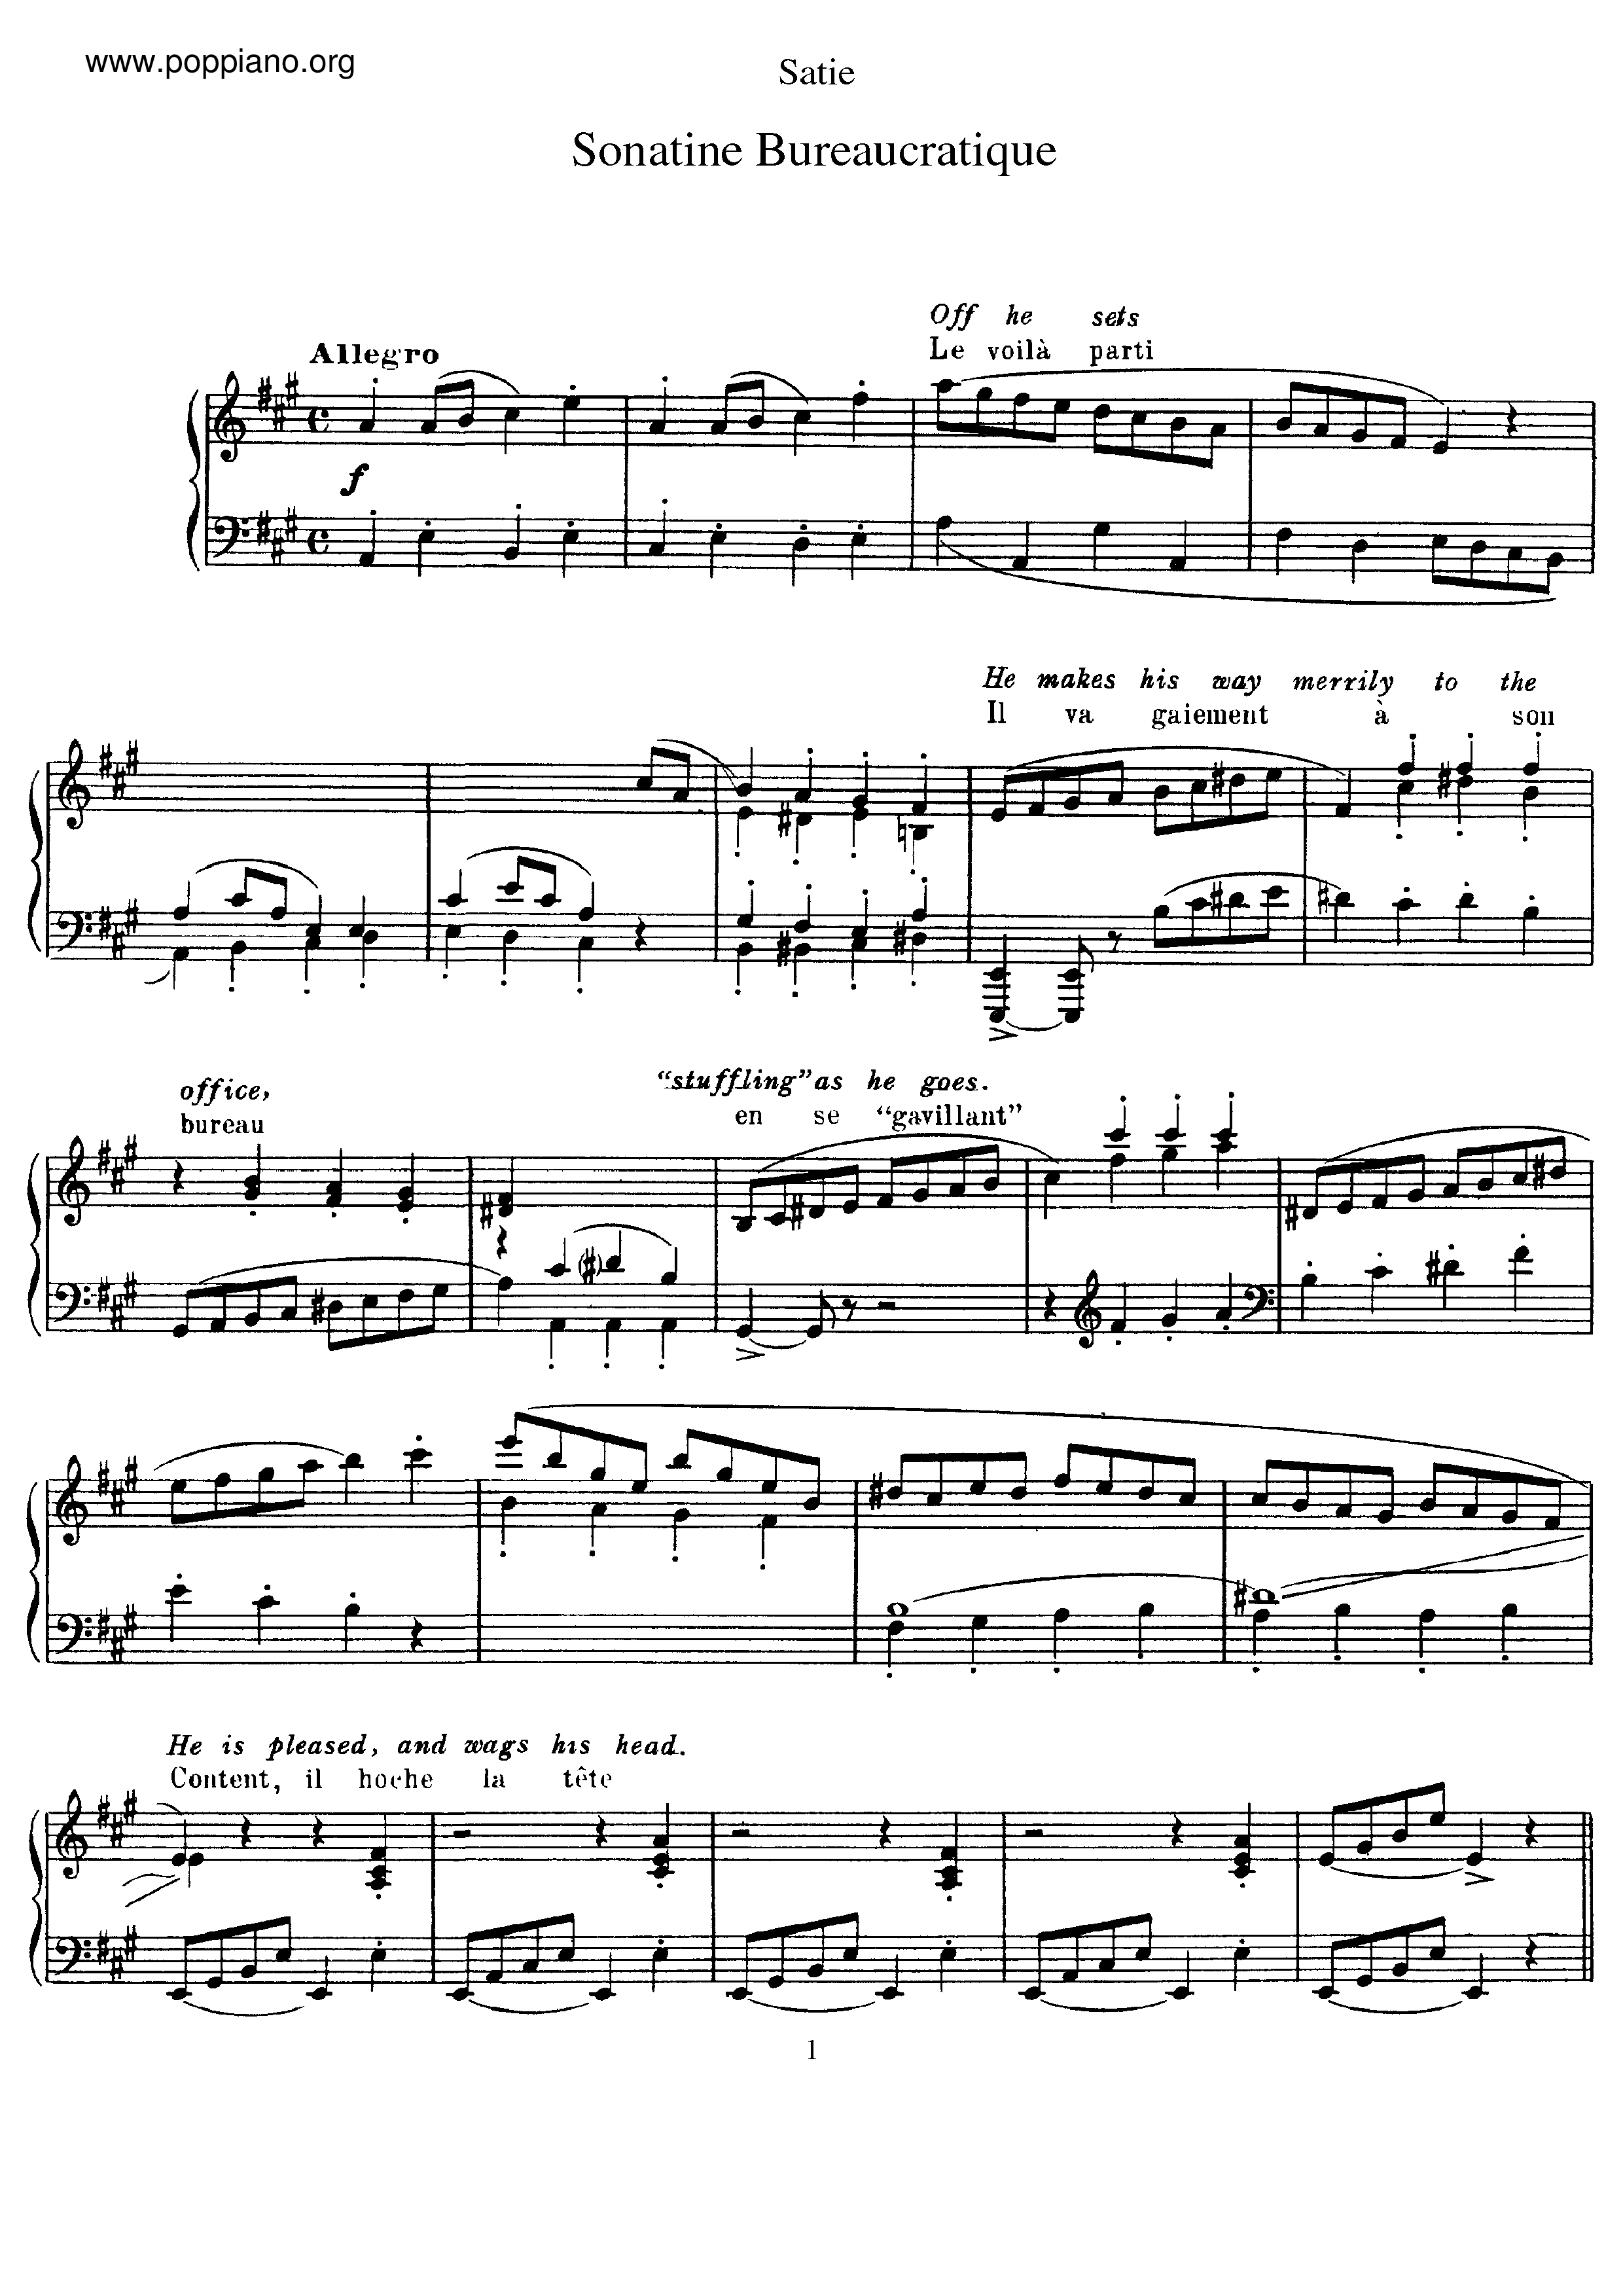 Sonatine bureaucratiqueピアノ譜